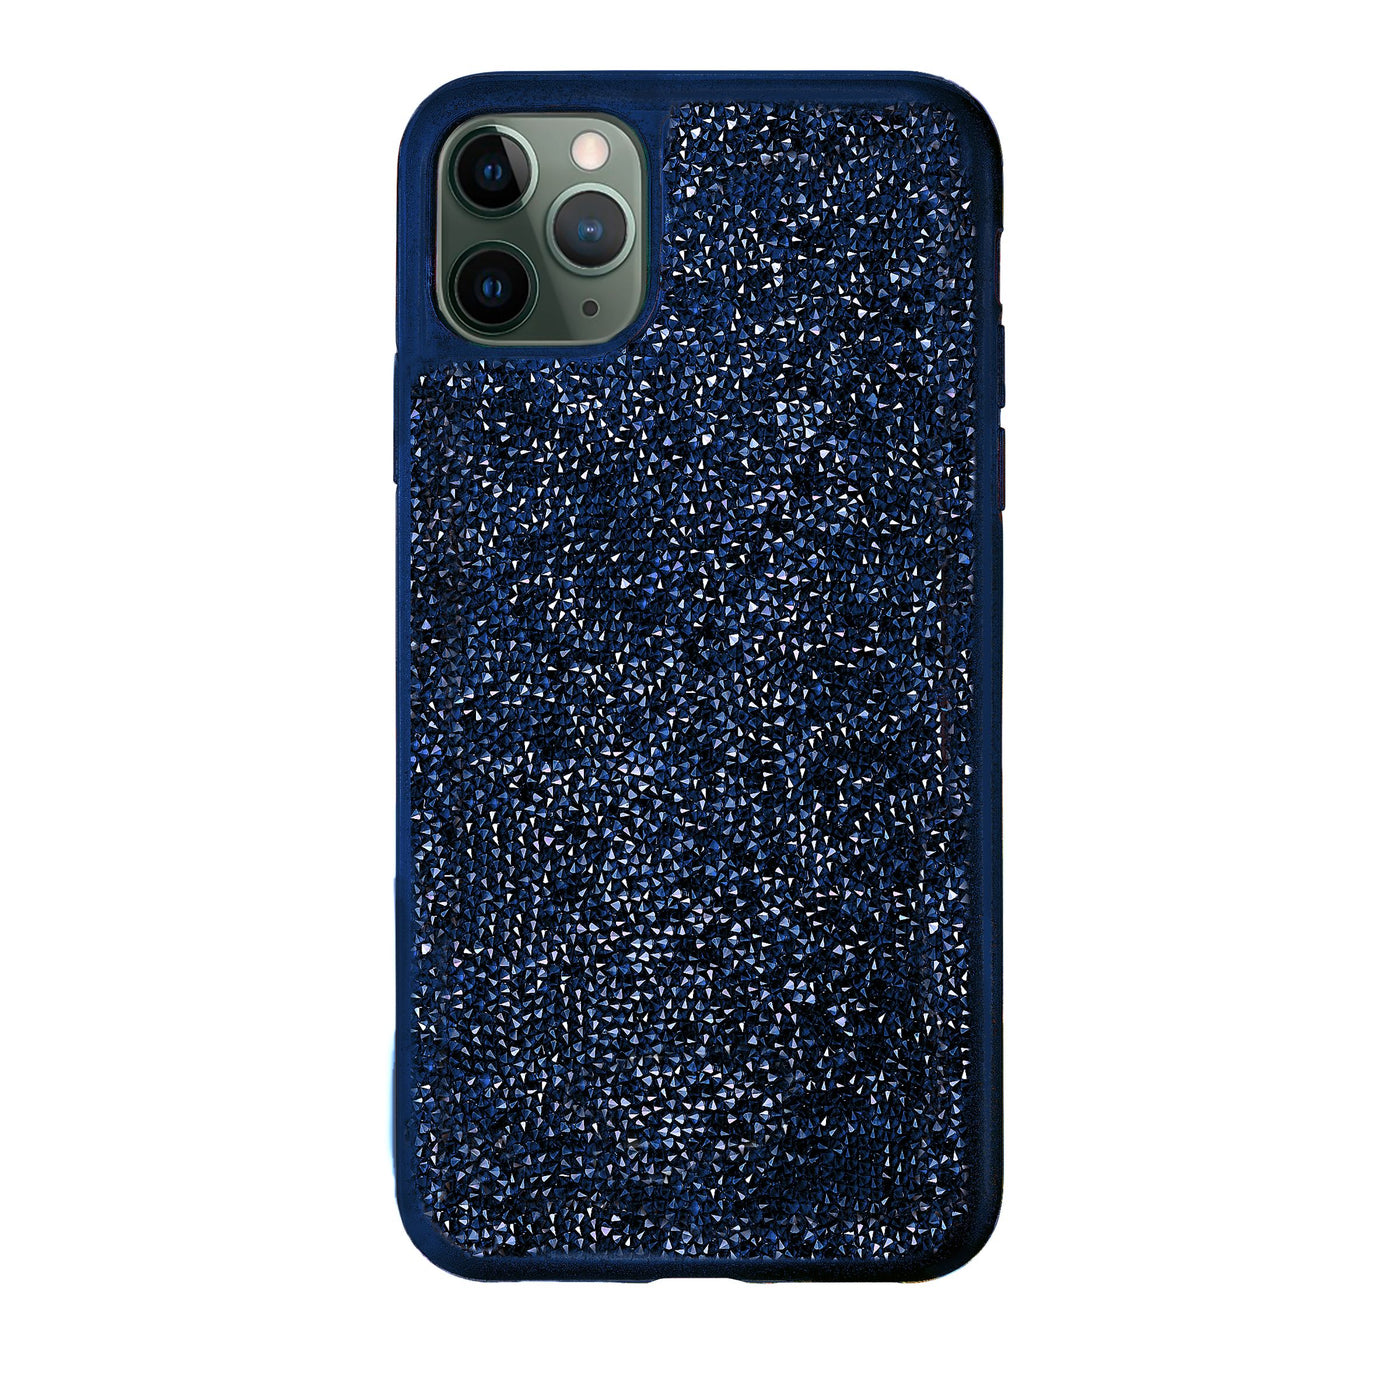 SWAROVSKI כיסוי לאייפון GLAM ROCK IPHONE® 11 PRO MAX כחול